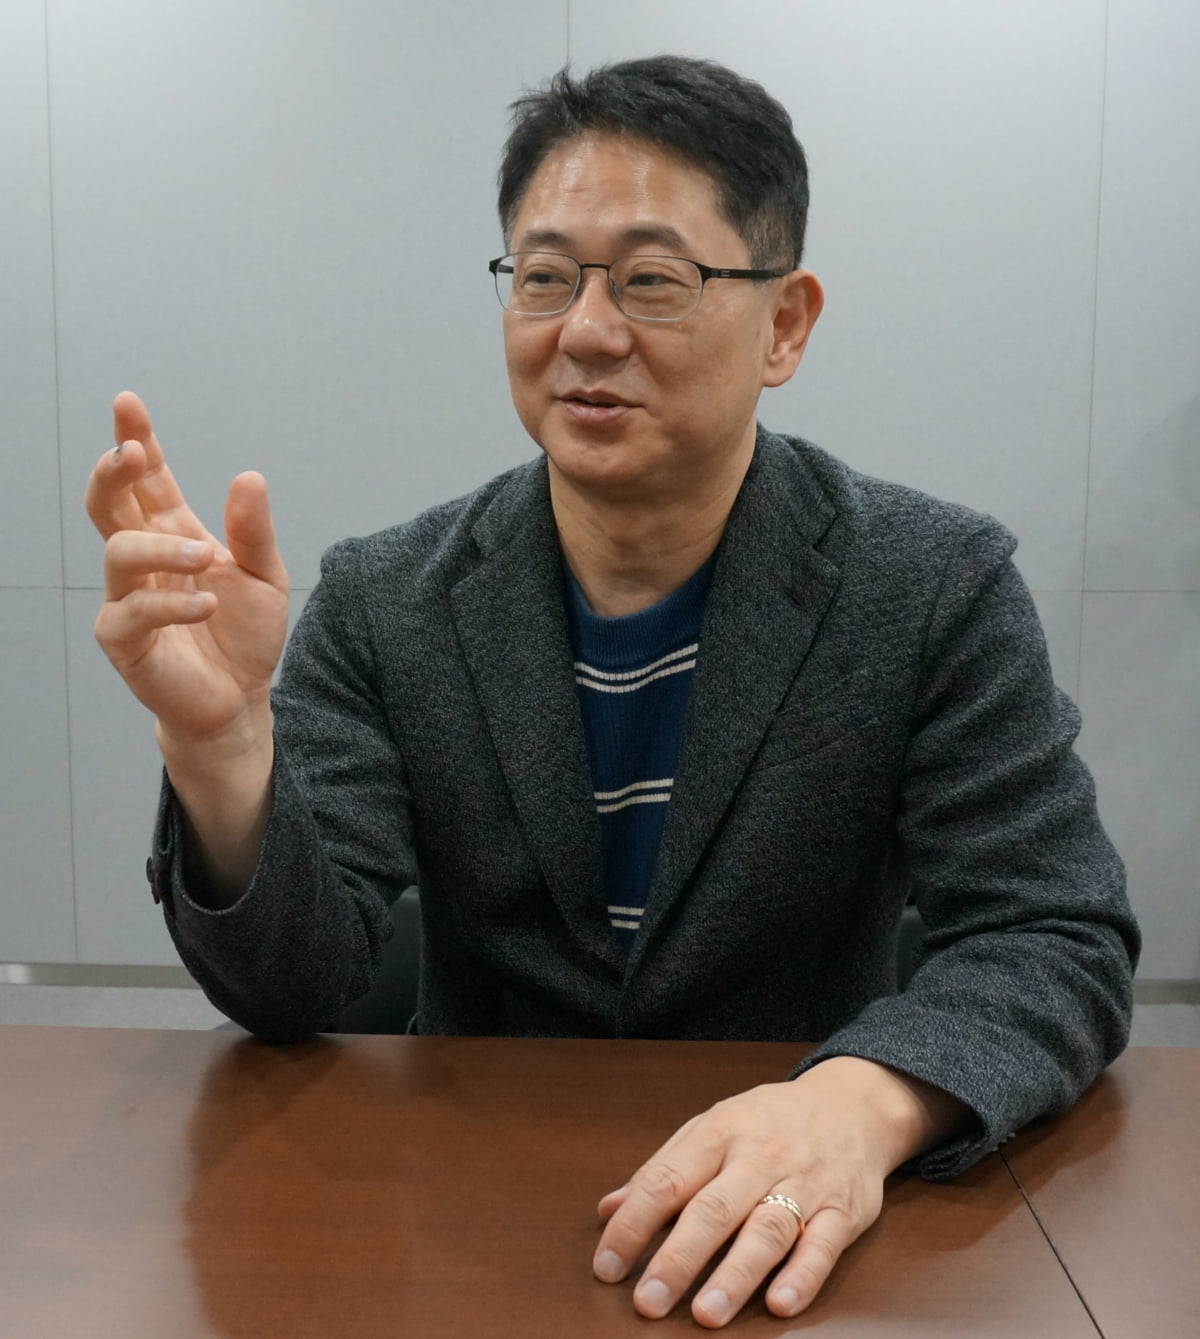 김재경 신라젠 대표가 자사의 후보물질에 대해 설명하고 있다. 이우상 기자